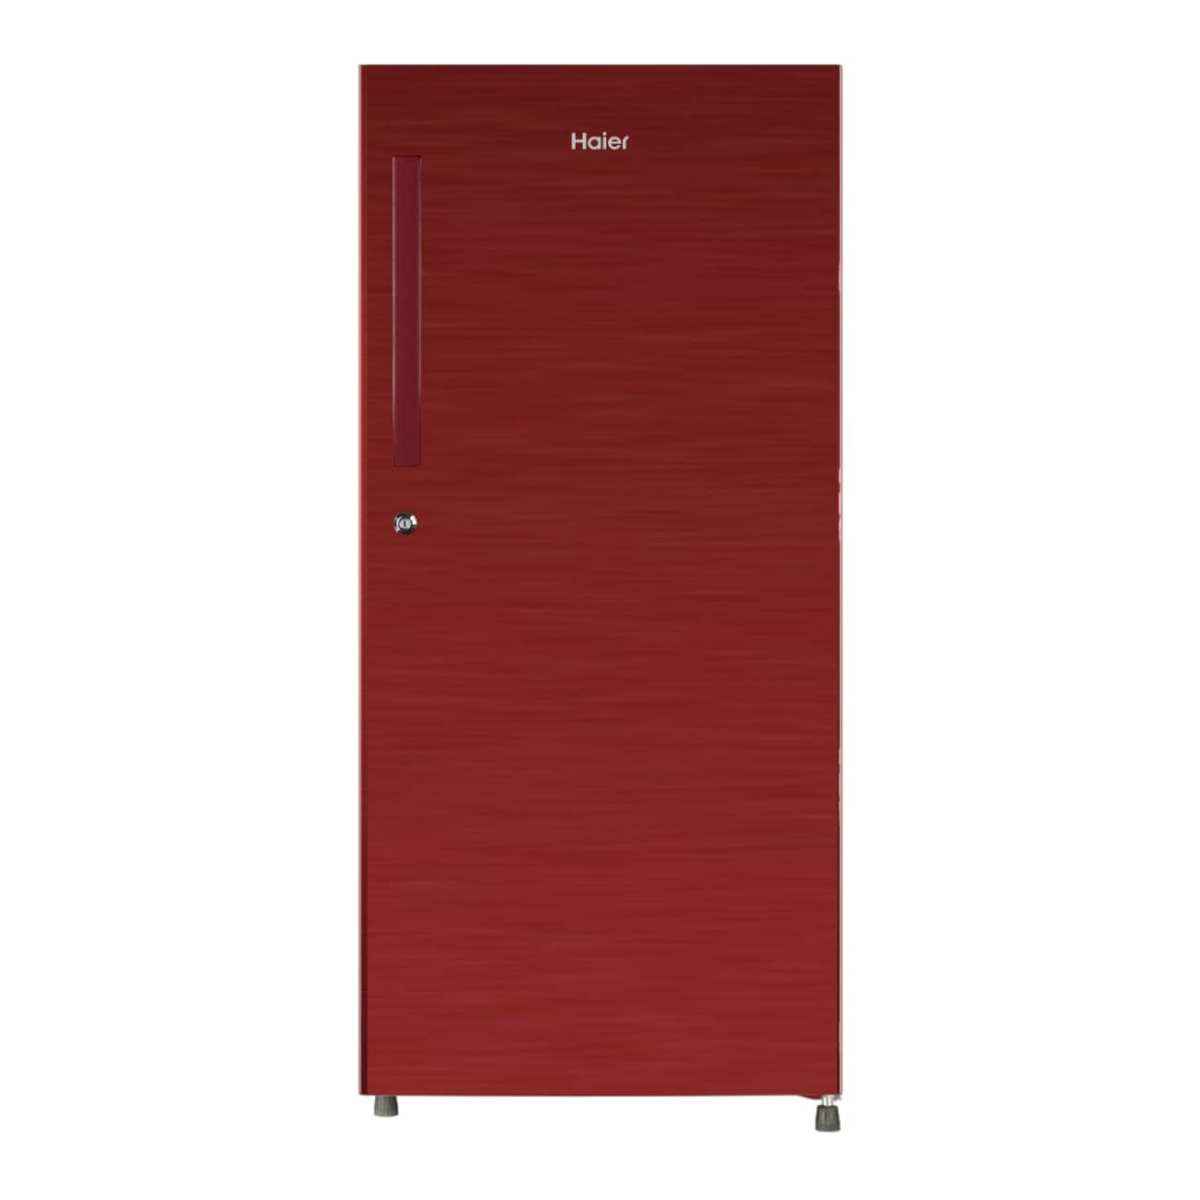 Haier 195 L 3 Star Single Door Refrigerator (HED-20TRR)